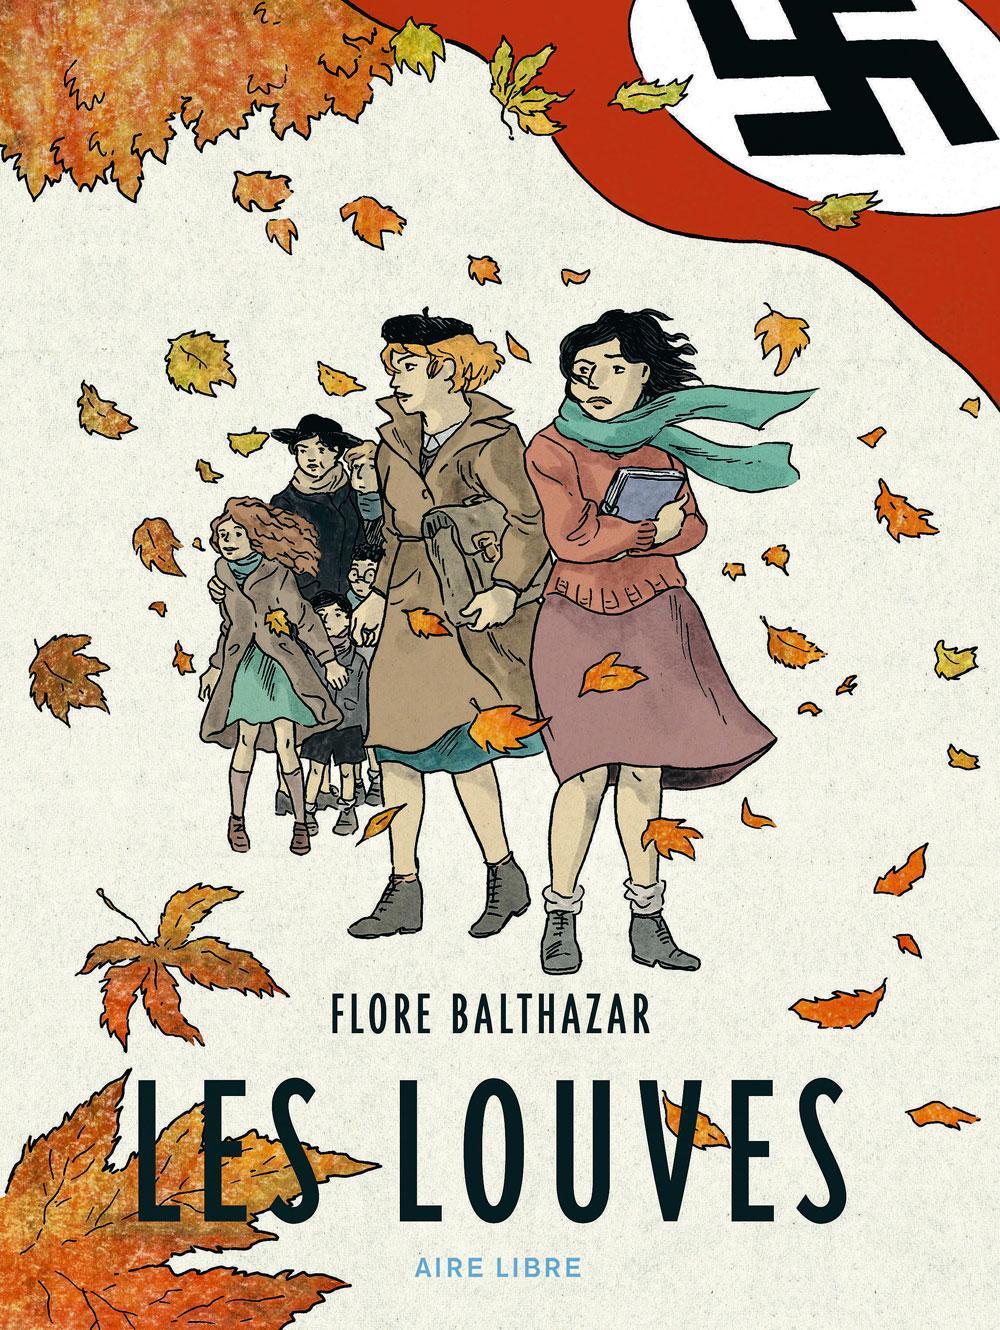 Les Louves. Femmes en résistance pendant la Seconde Guerre mondiale, par Flore Balthazar, éd. Dupuis, 200 p.